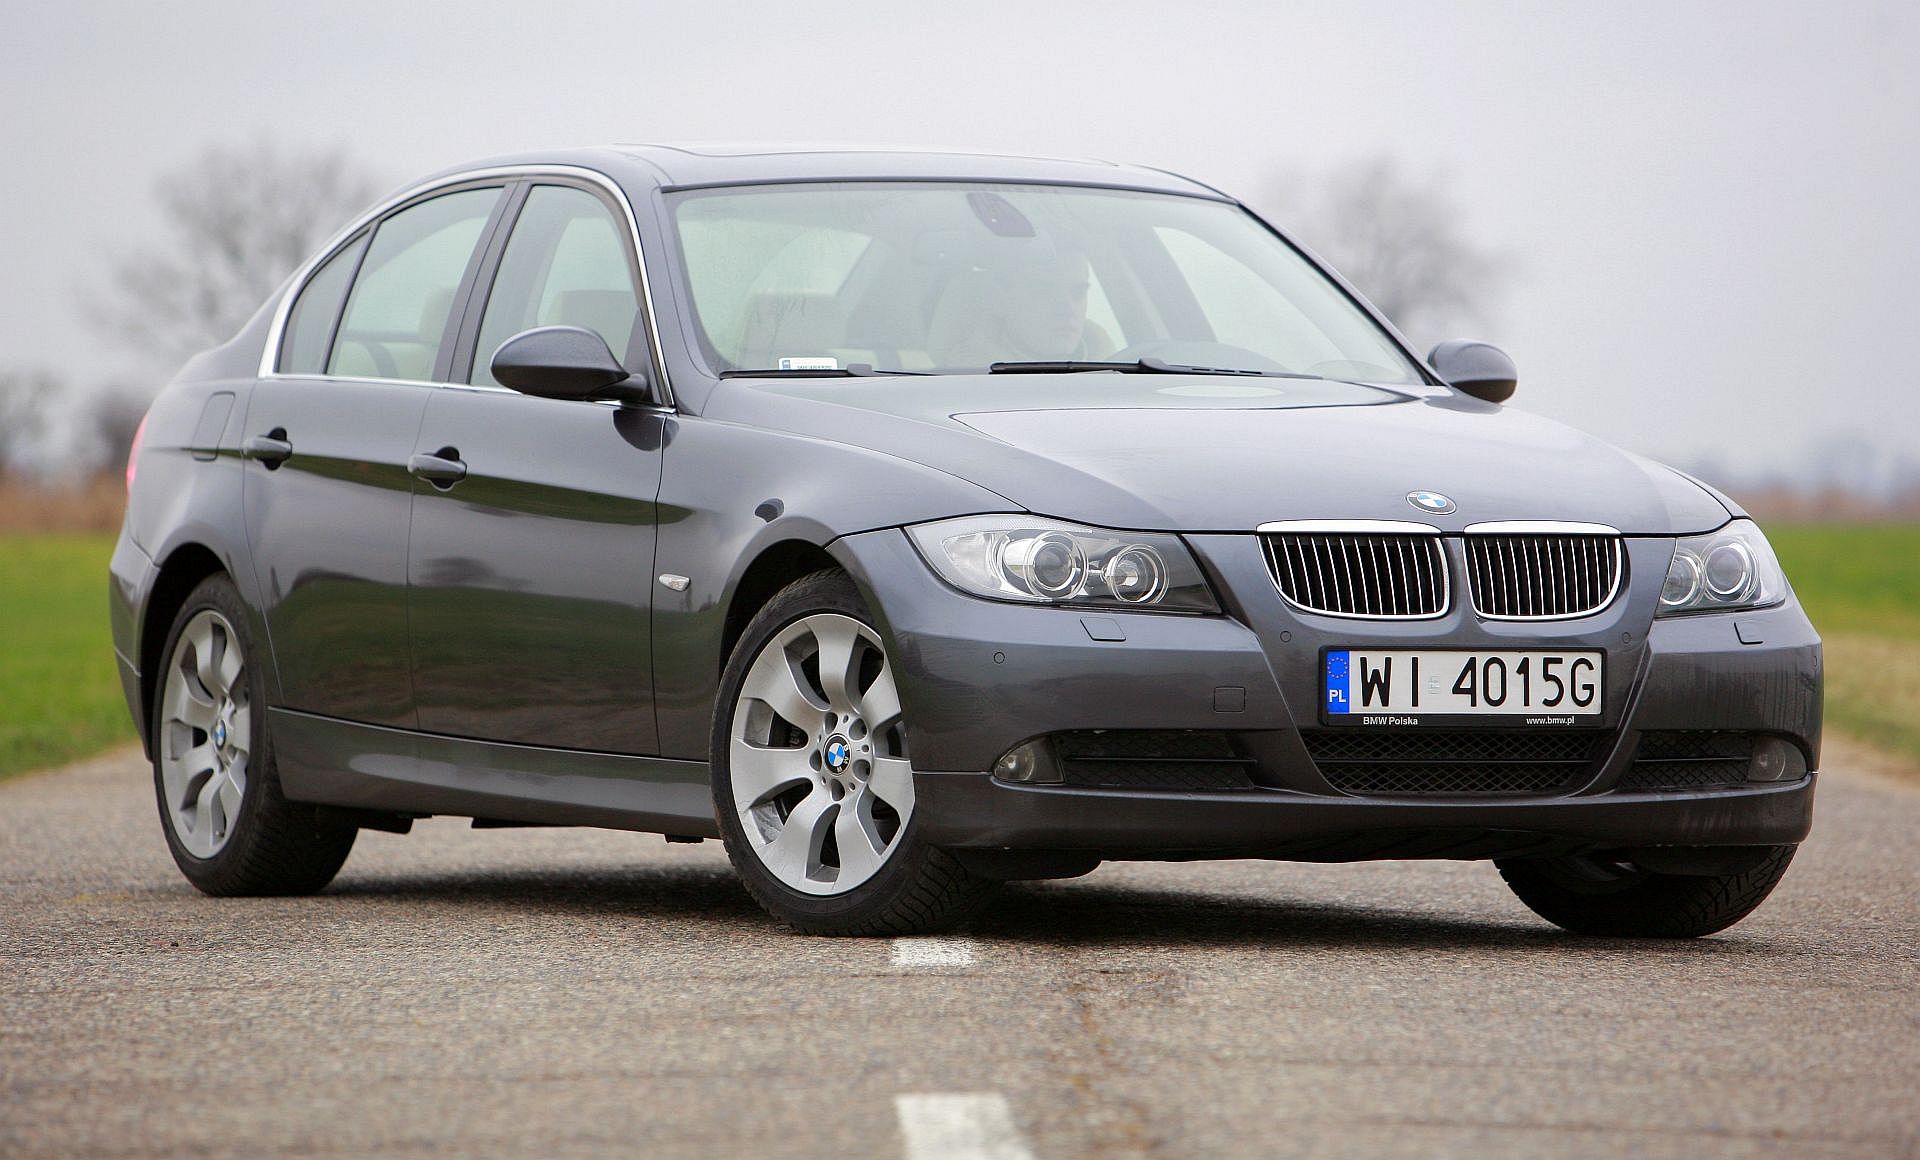 Żarówki BMW seria 3 (E90) jakie potrzebne do wymiany?